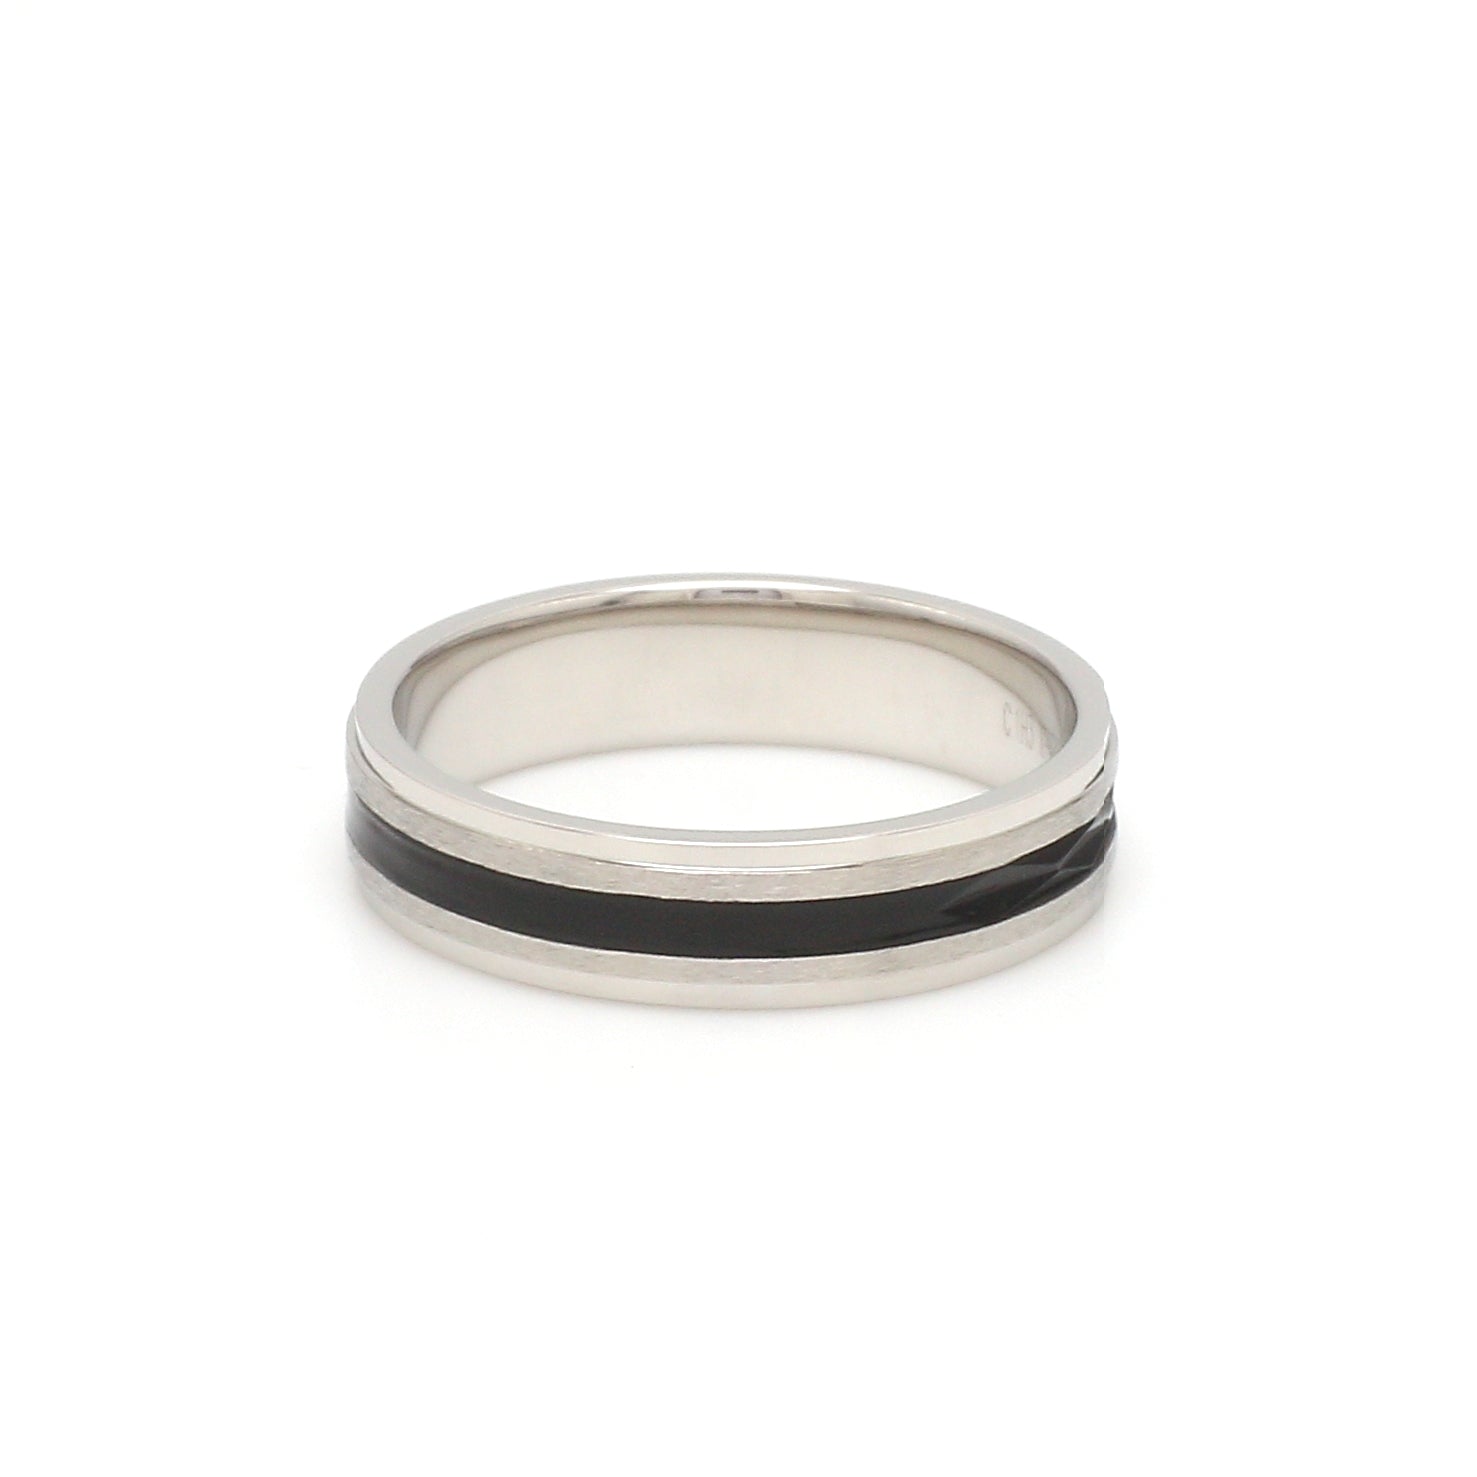 Platinum Couple Unisex Ring with Black Line Ceramic JL PT 1328   Jewelove